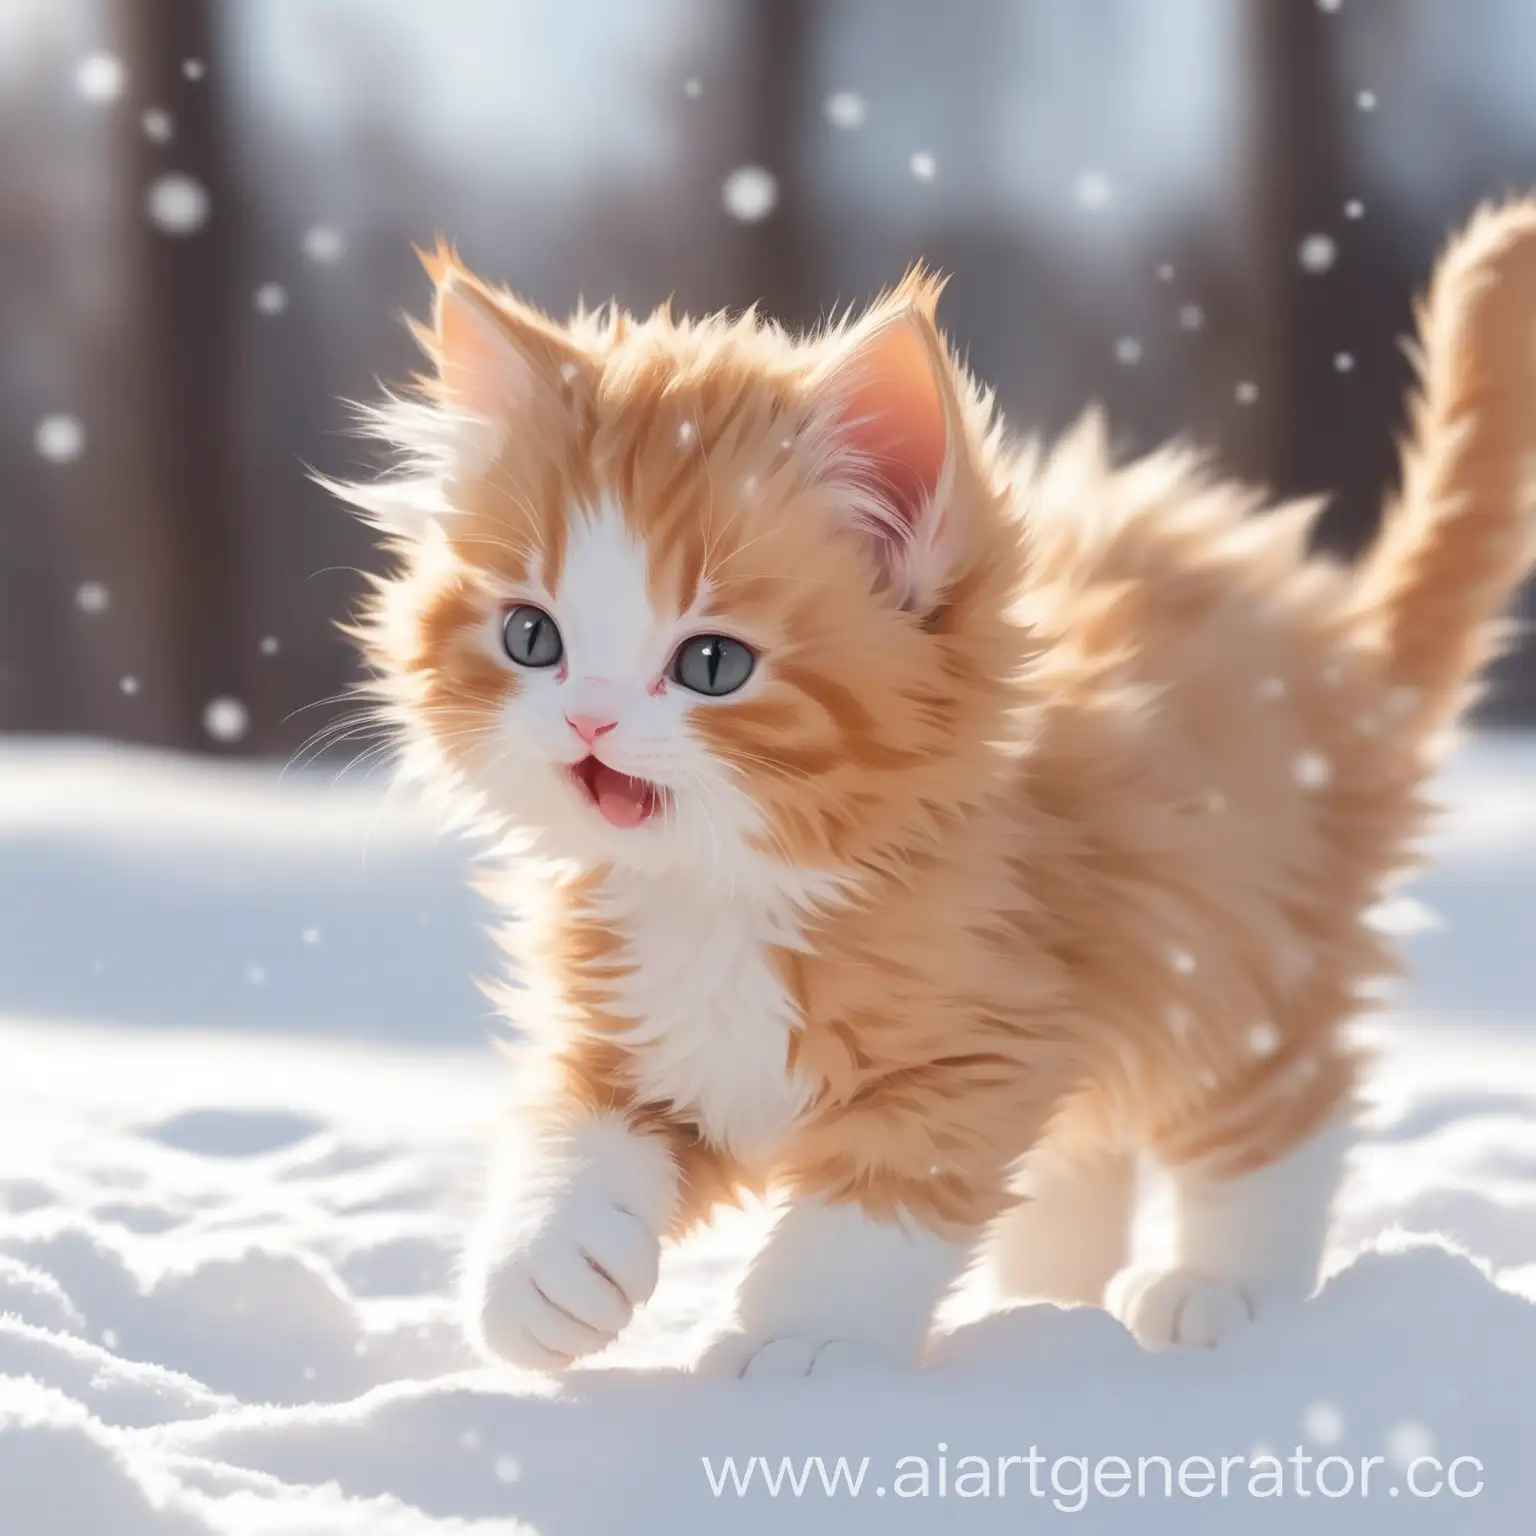 Пушистый рыжо-белый, весёлый котик играется зимой